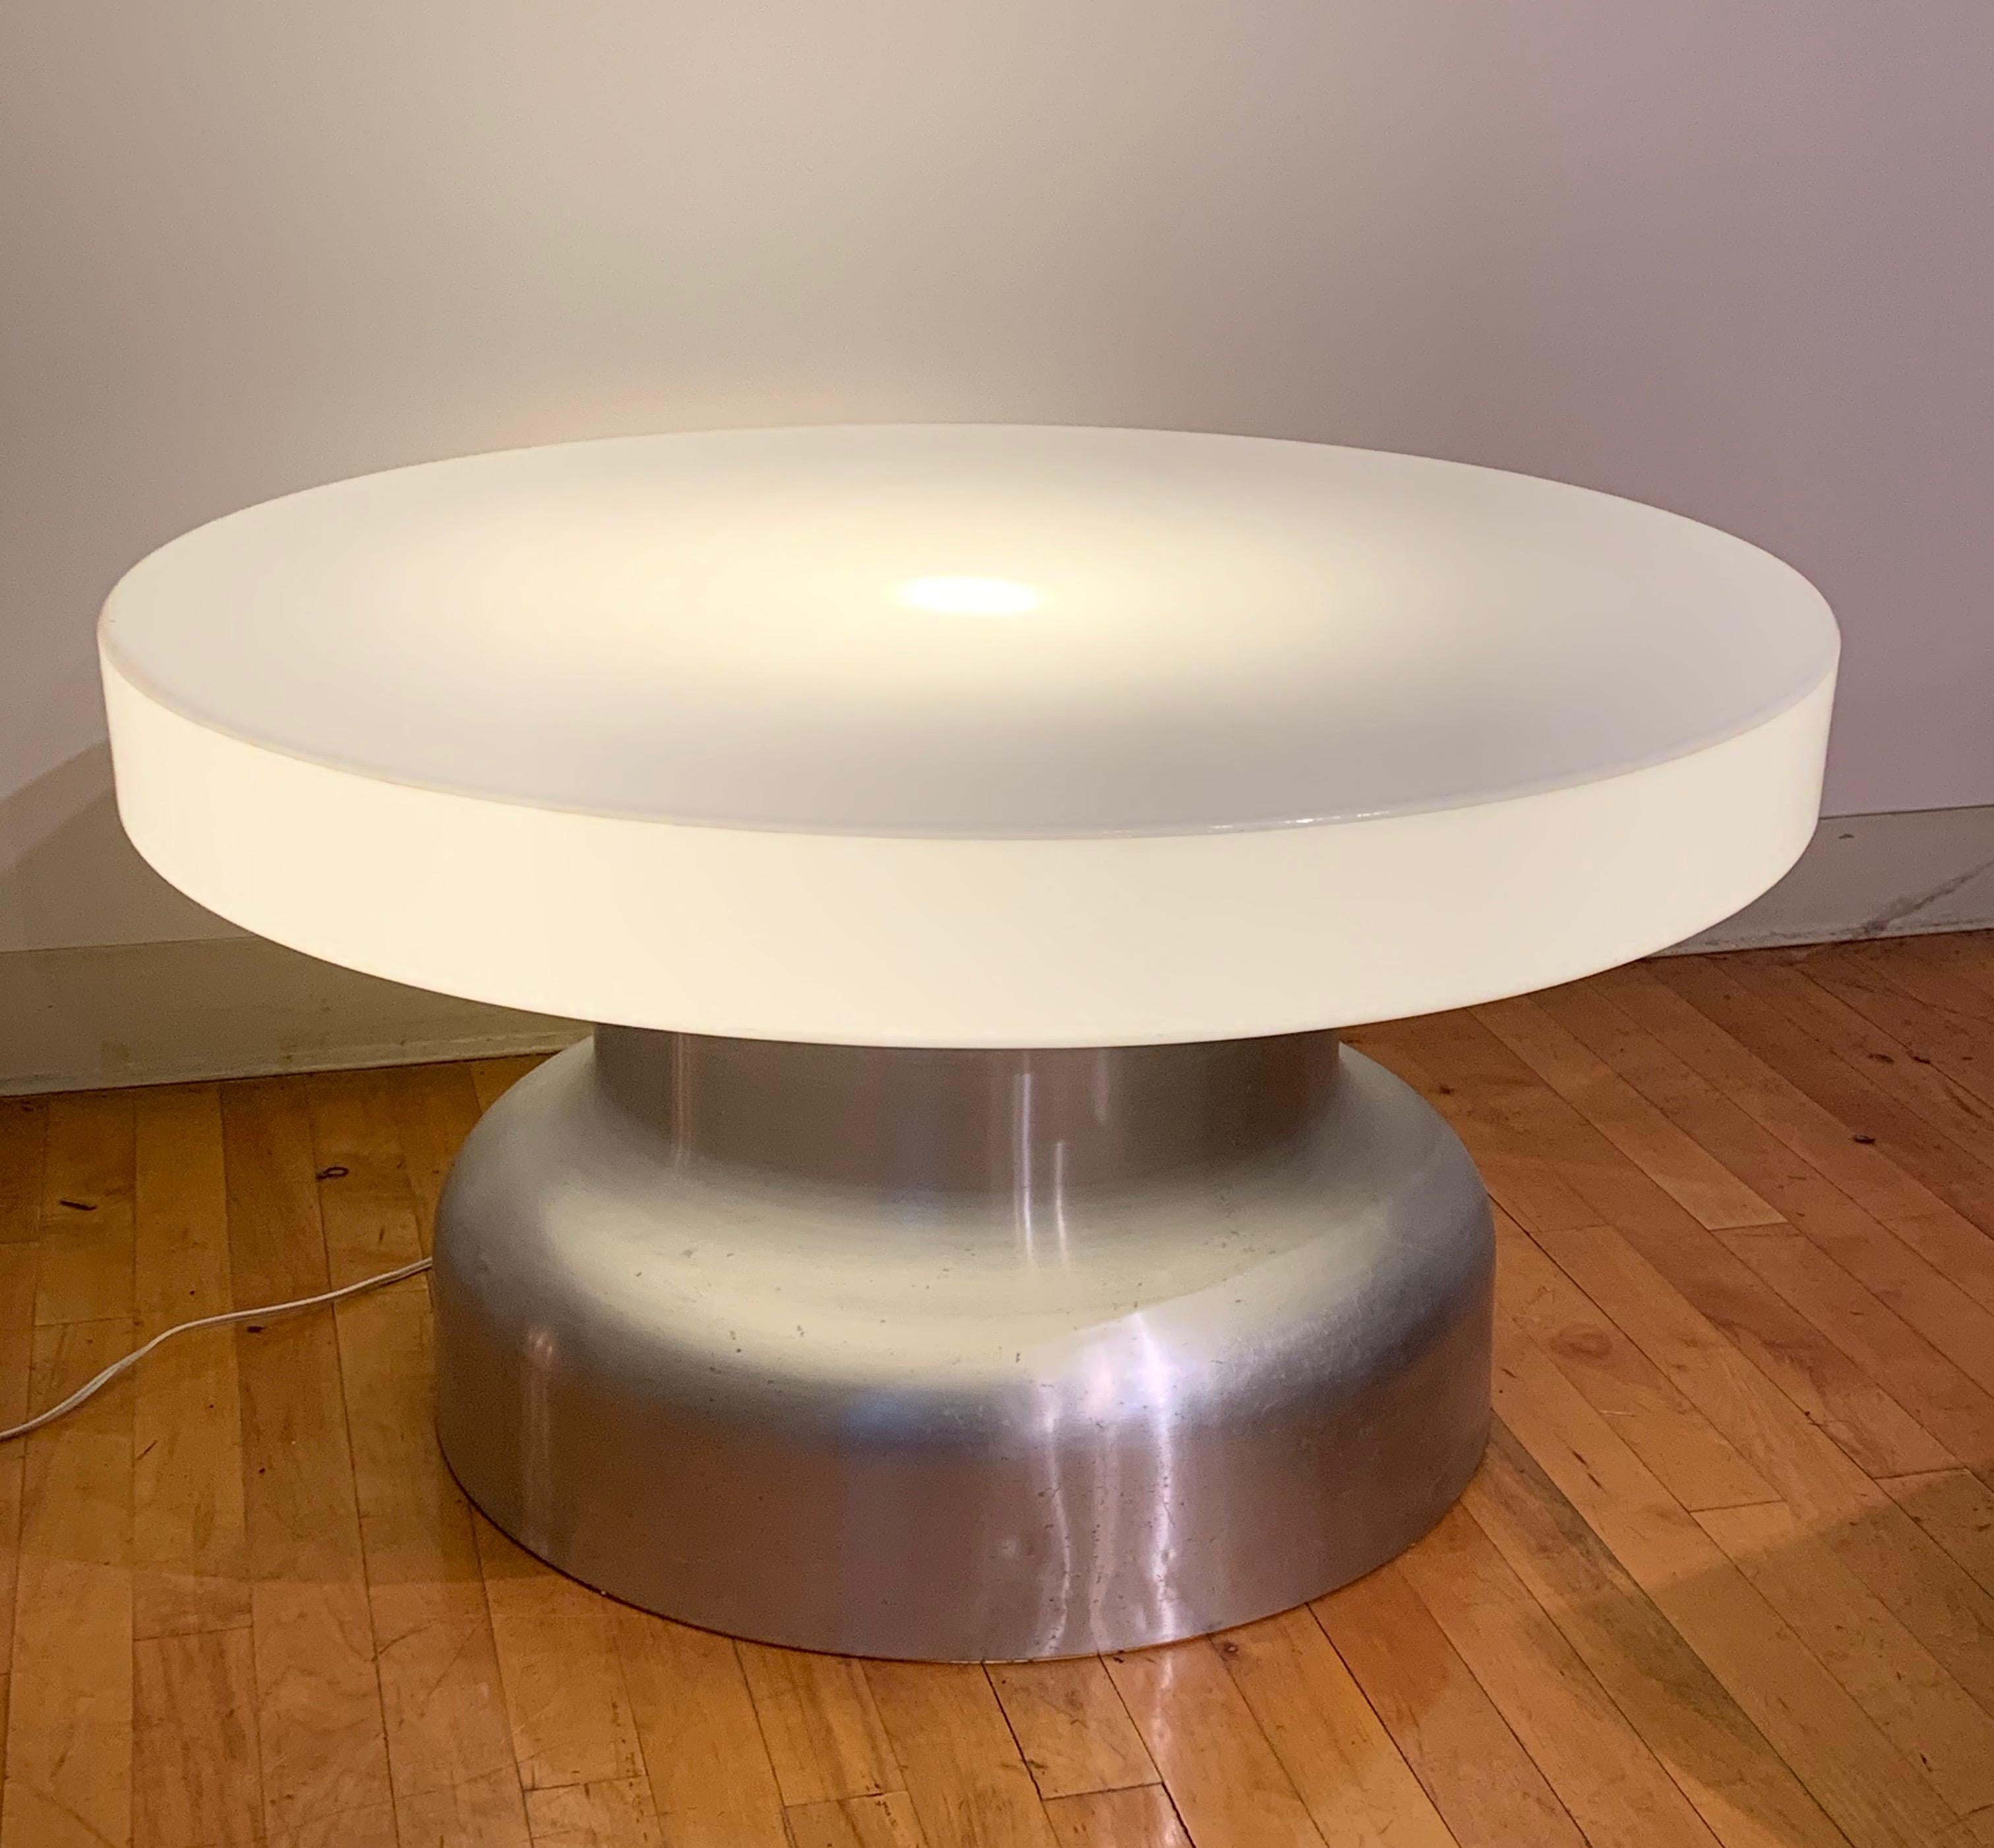 Cette table basse des années 1970 possède un plateau en acrylique et une base cylindrique en aluminium brossé. Il y a une seule ampoule située dans la partie supérieure. 